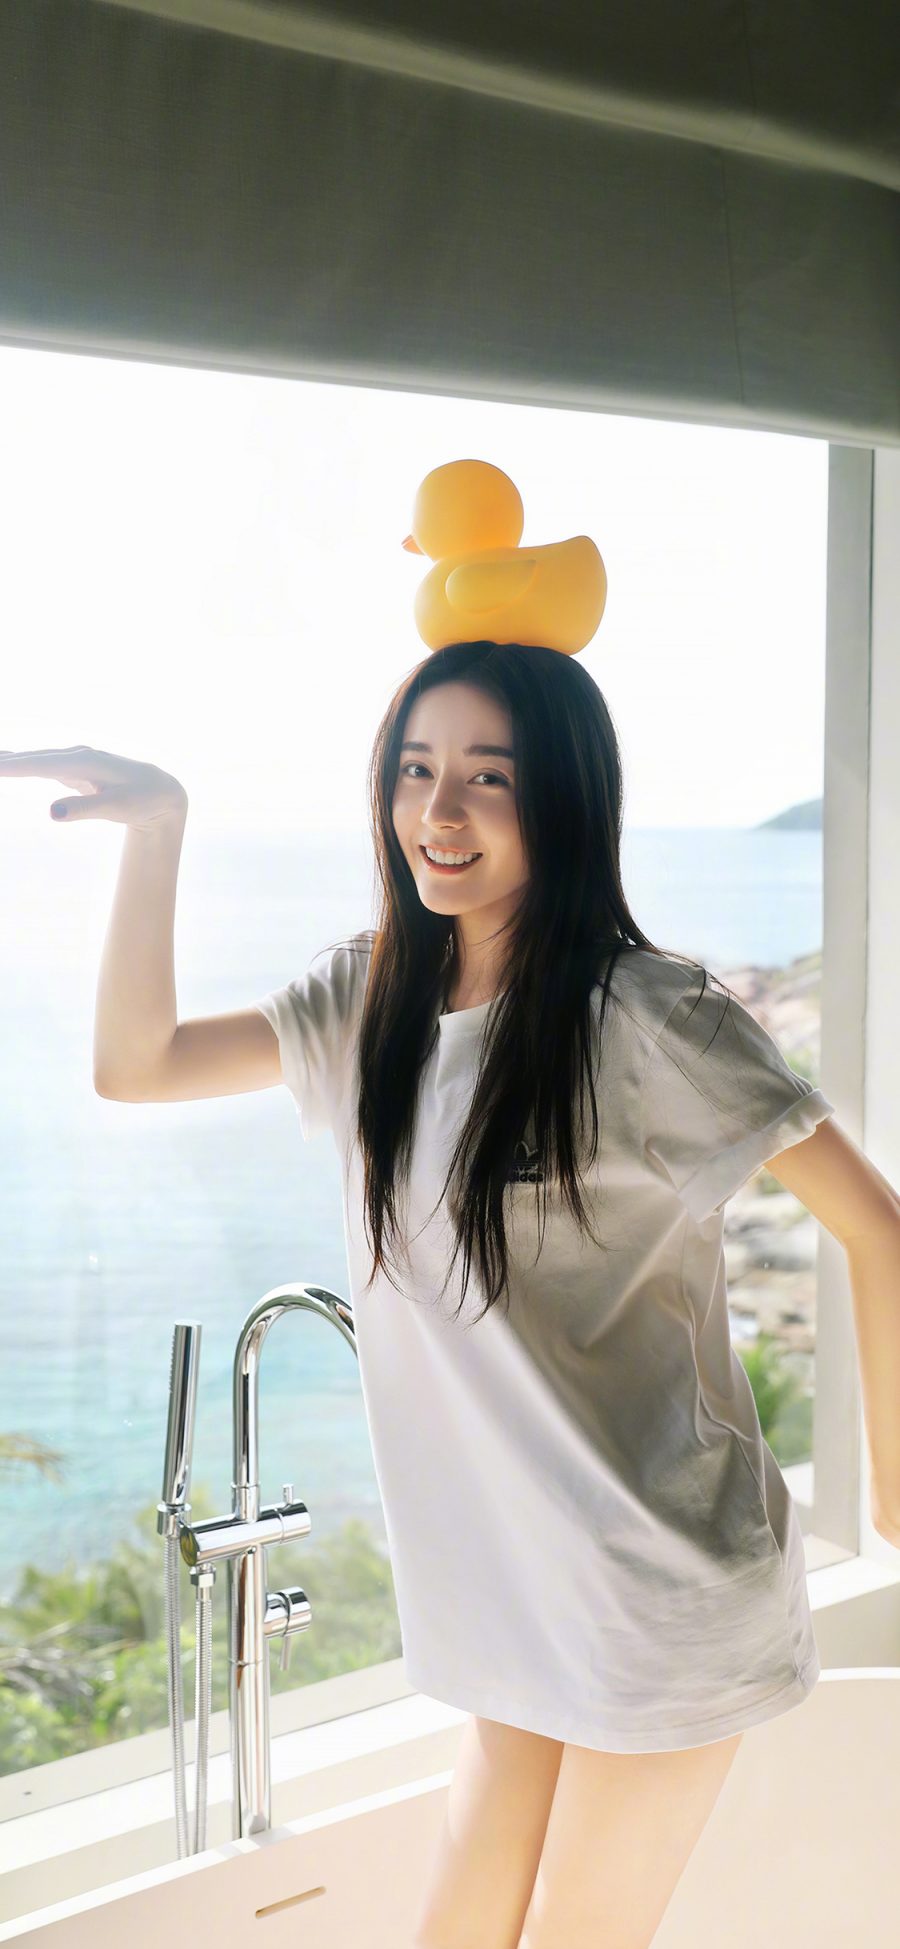 [2436×1125]迪丽热巴 演员 明星 艺人 小黄鸭 胖迪 浴缸 苹果手机美女壁纸图片